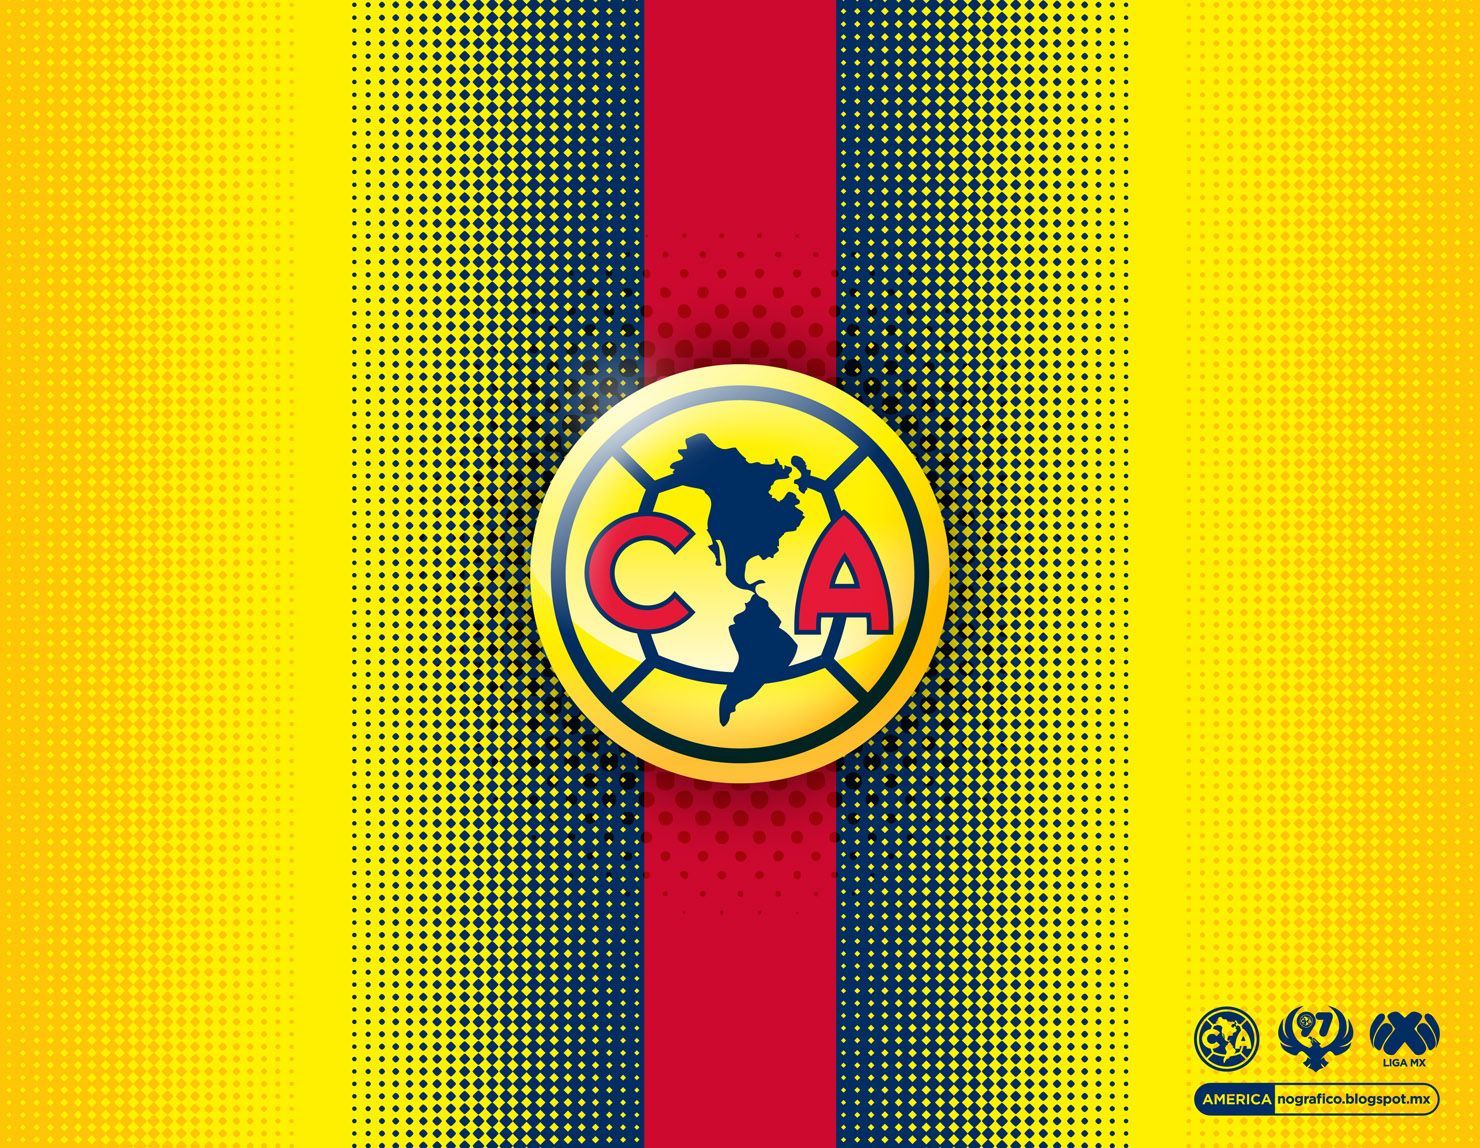 Club América • #AMERICAnografico. Club américa, Aguilas del america, Equipo de fútbol